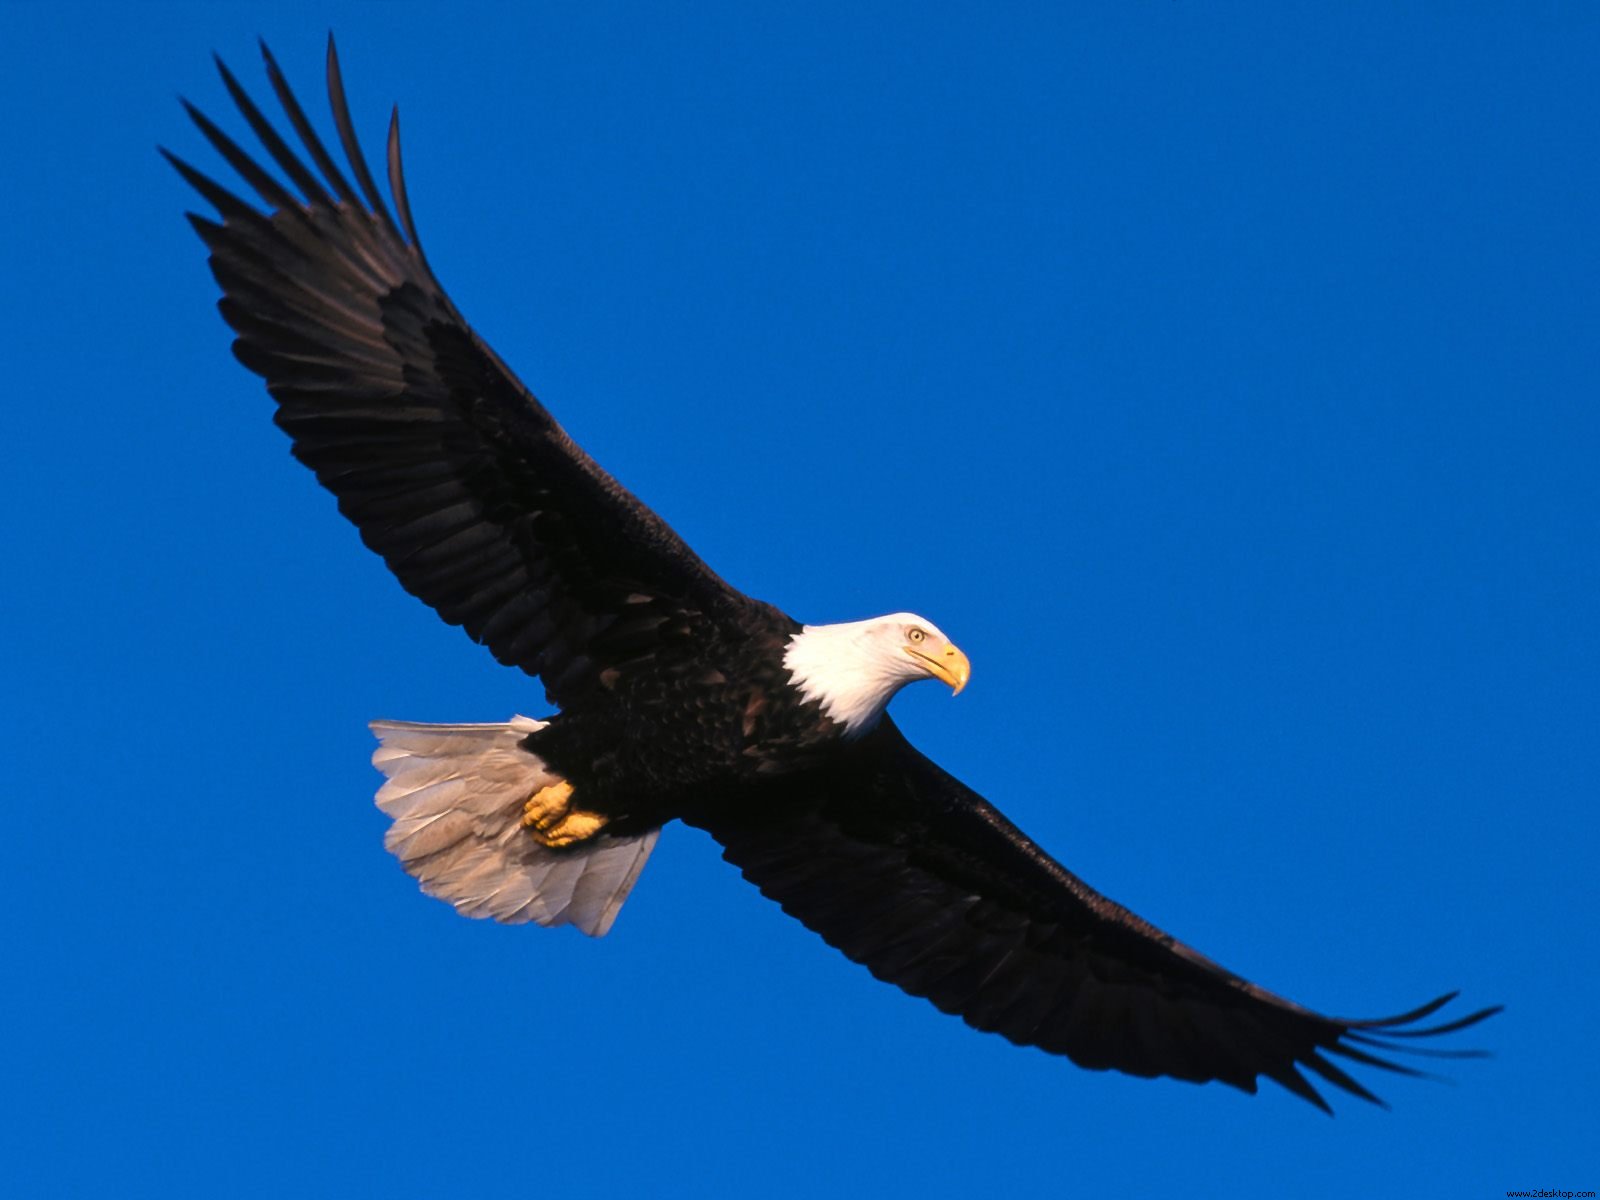 Eagle HD Wallpaper In Animals Imageci